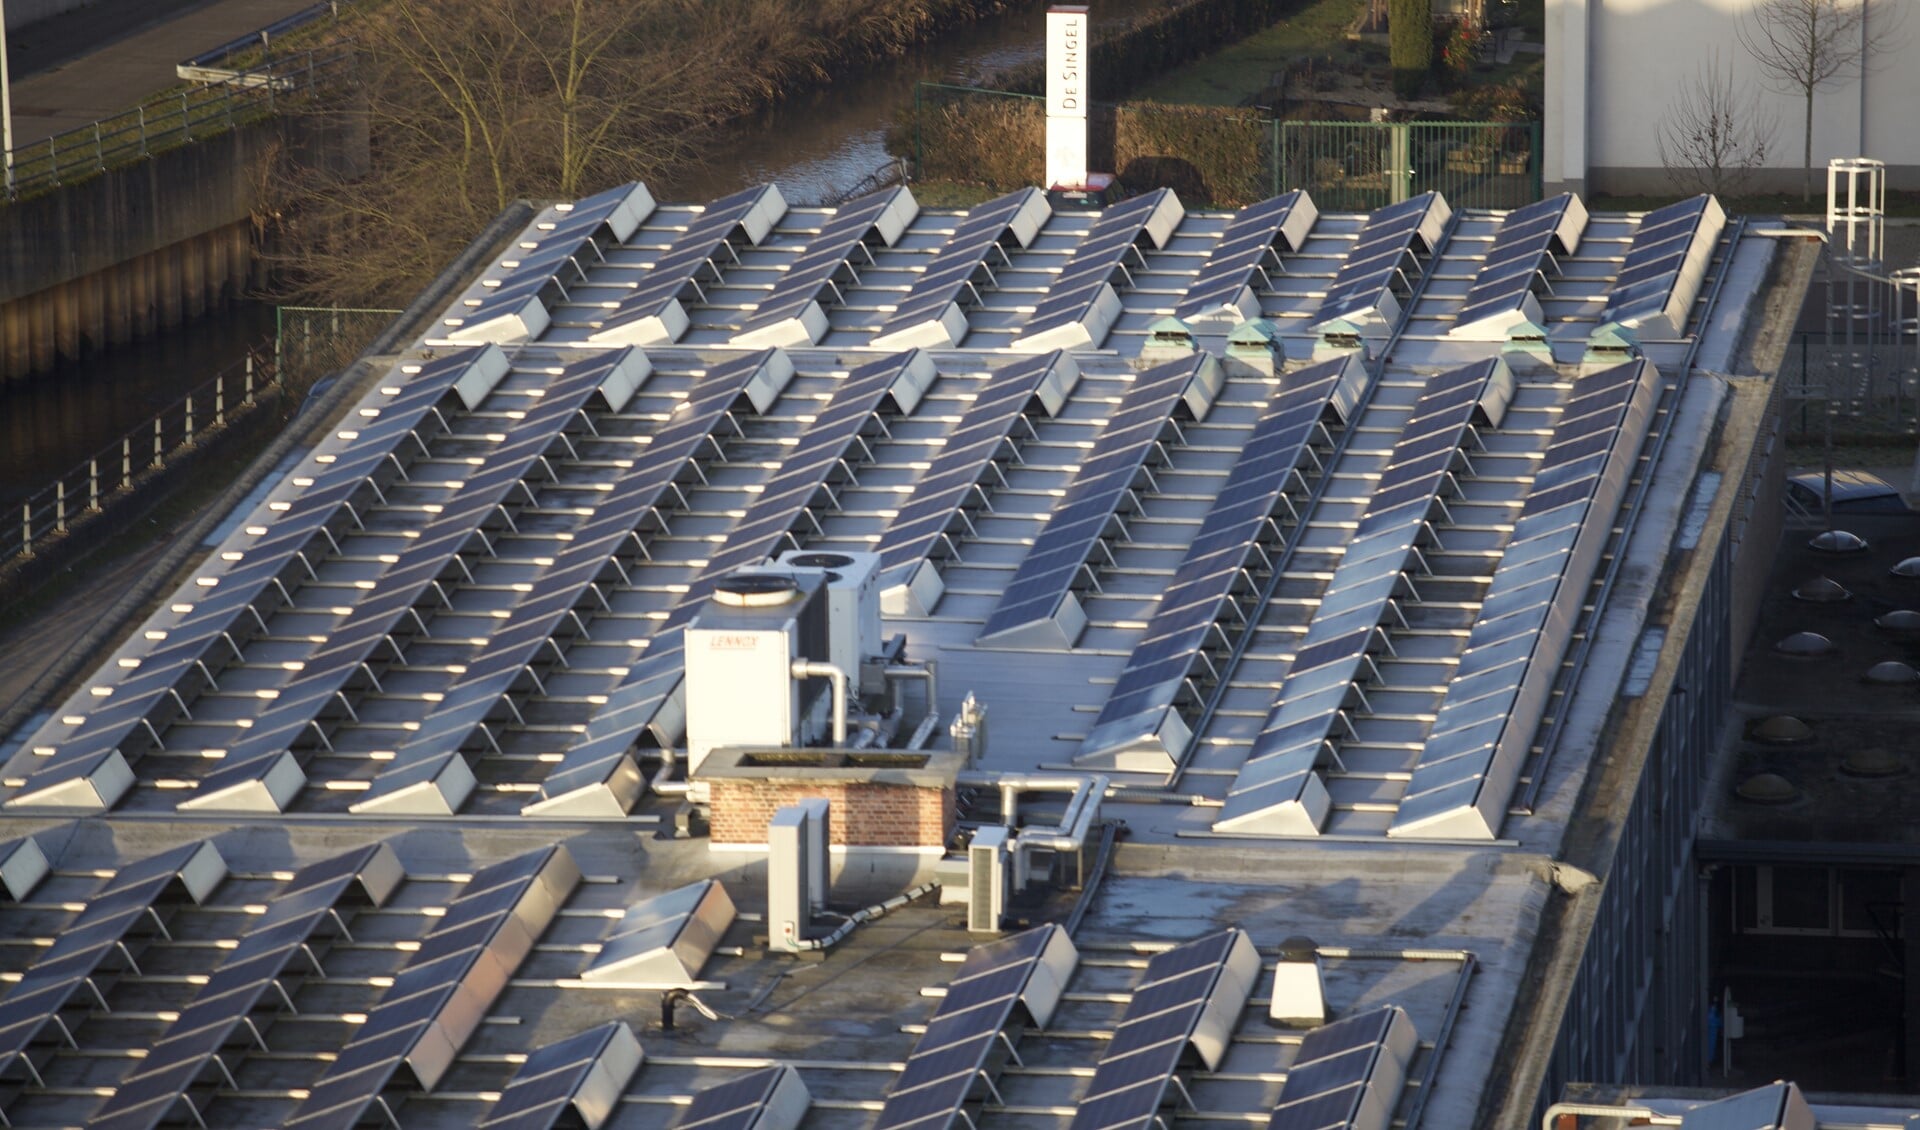 Grote bedrijfsdaken met zonnepanelen dragen bij aan de opgave voor meer duurzame energie.